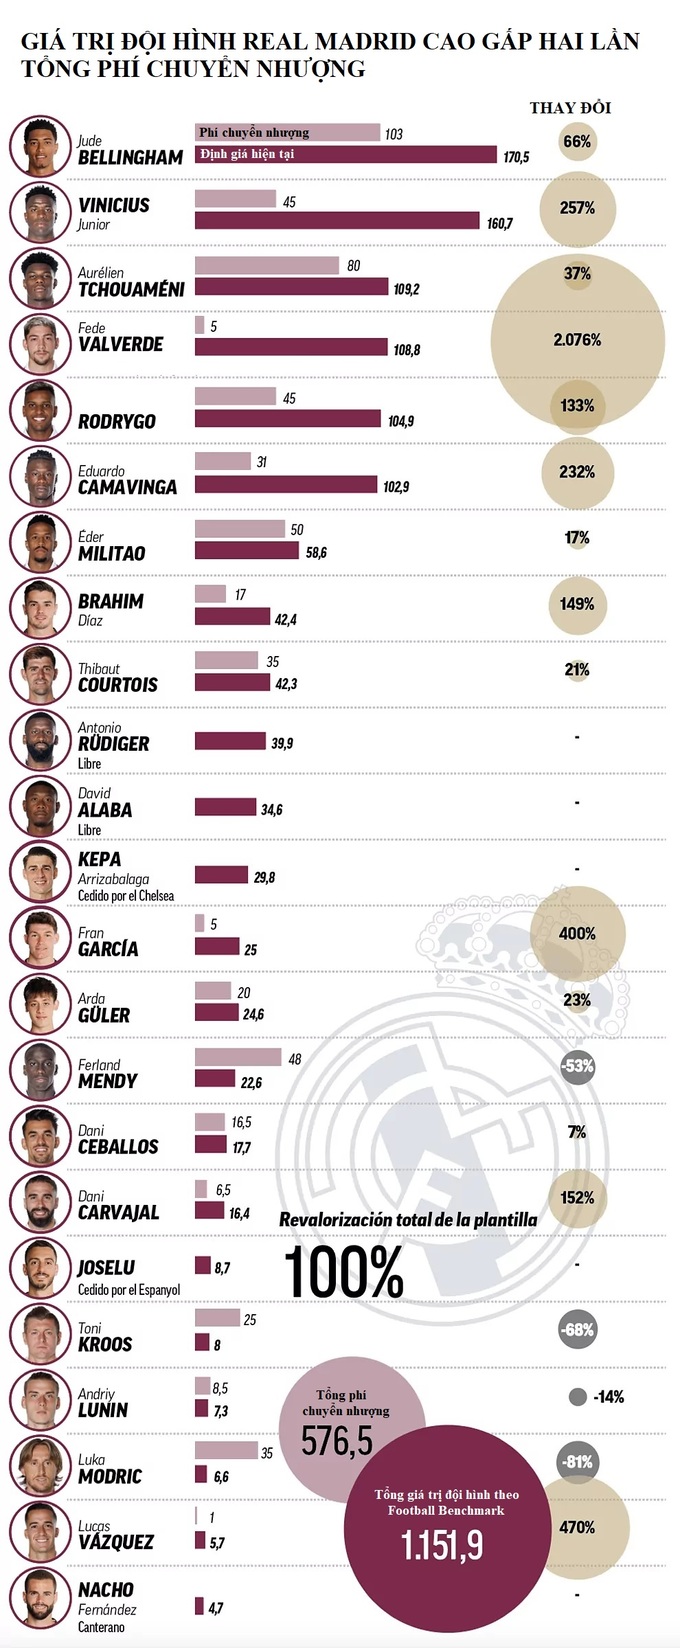 Hầu hết các thành viên của Real Madrid đều tăng giá theo Football Benchmark.